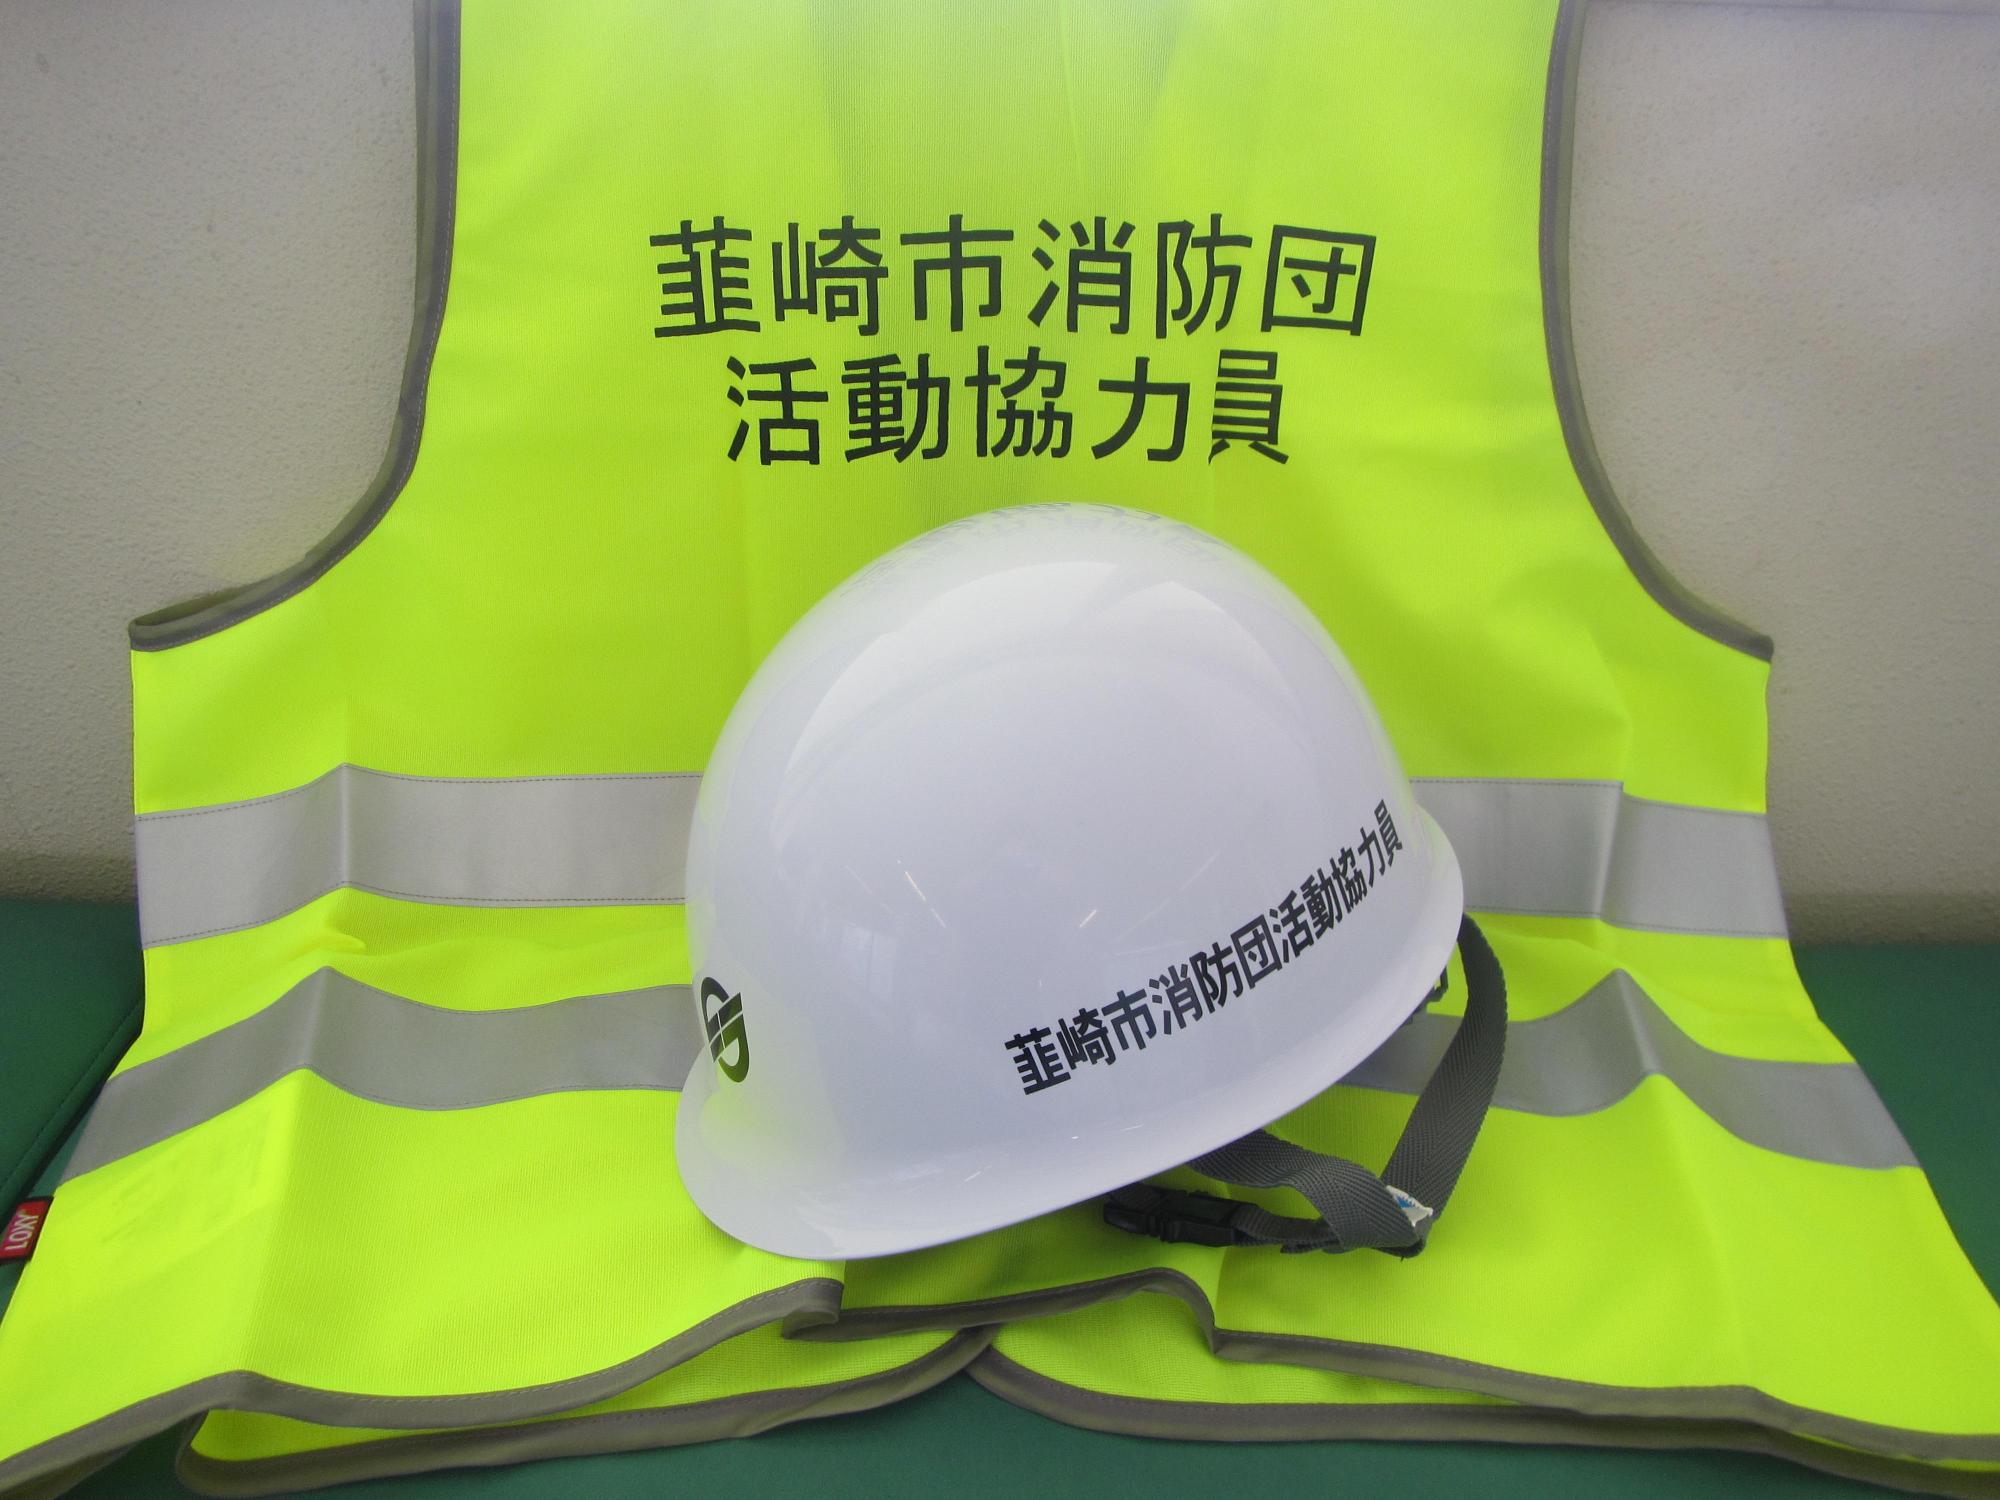 韮崎市消防団活動協力員と記載のある緑色の蛍光色のベストの上に白いヘルメットを置いた写真